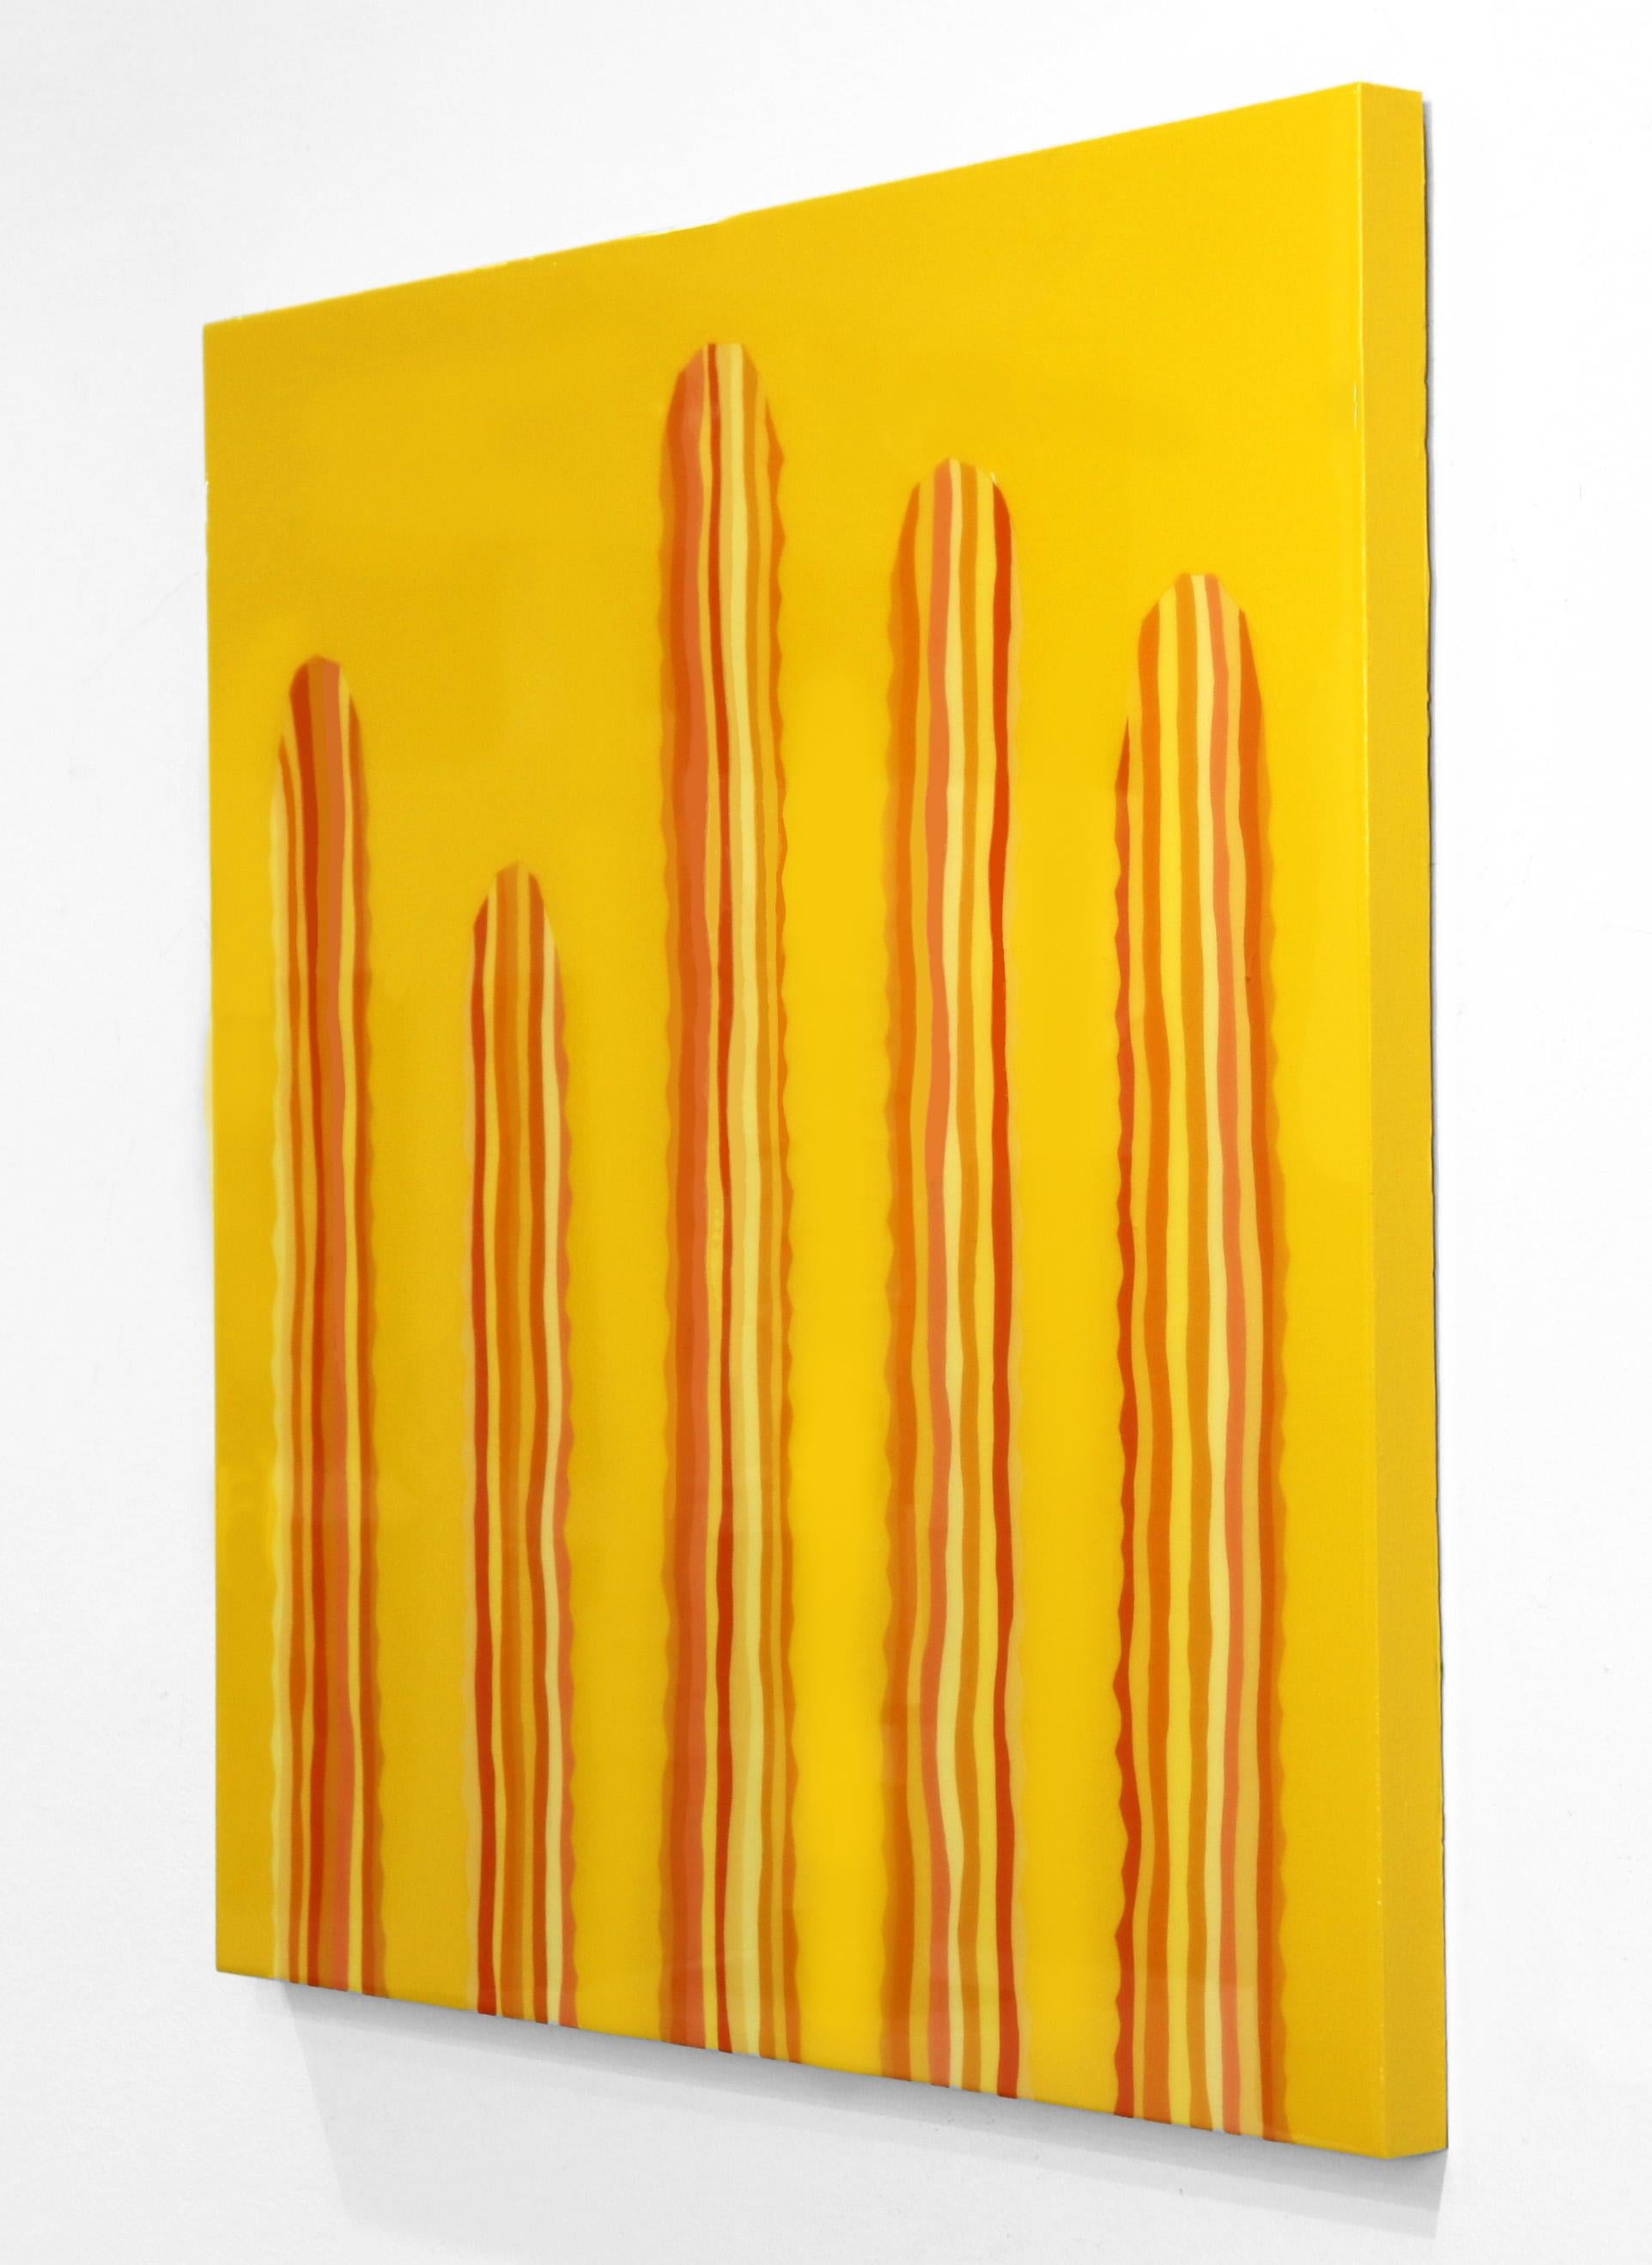 Peinture Pop Art Cactus jaune orangé vibrant d'inspiration sud-ouest - Orange Landscape Painting par Will Beger